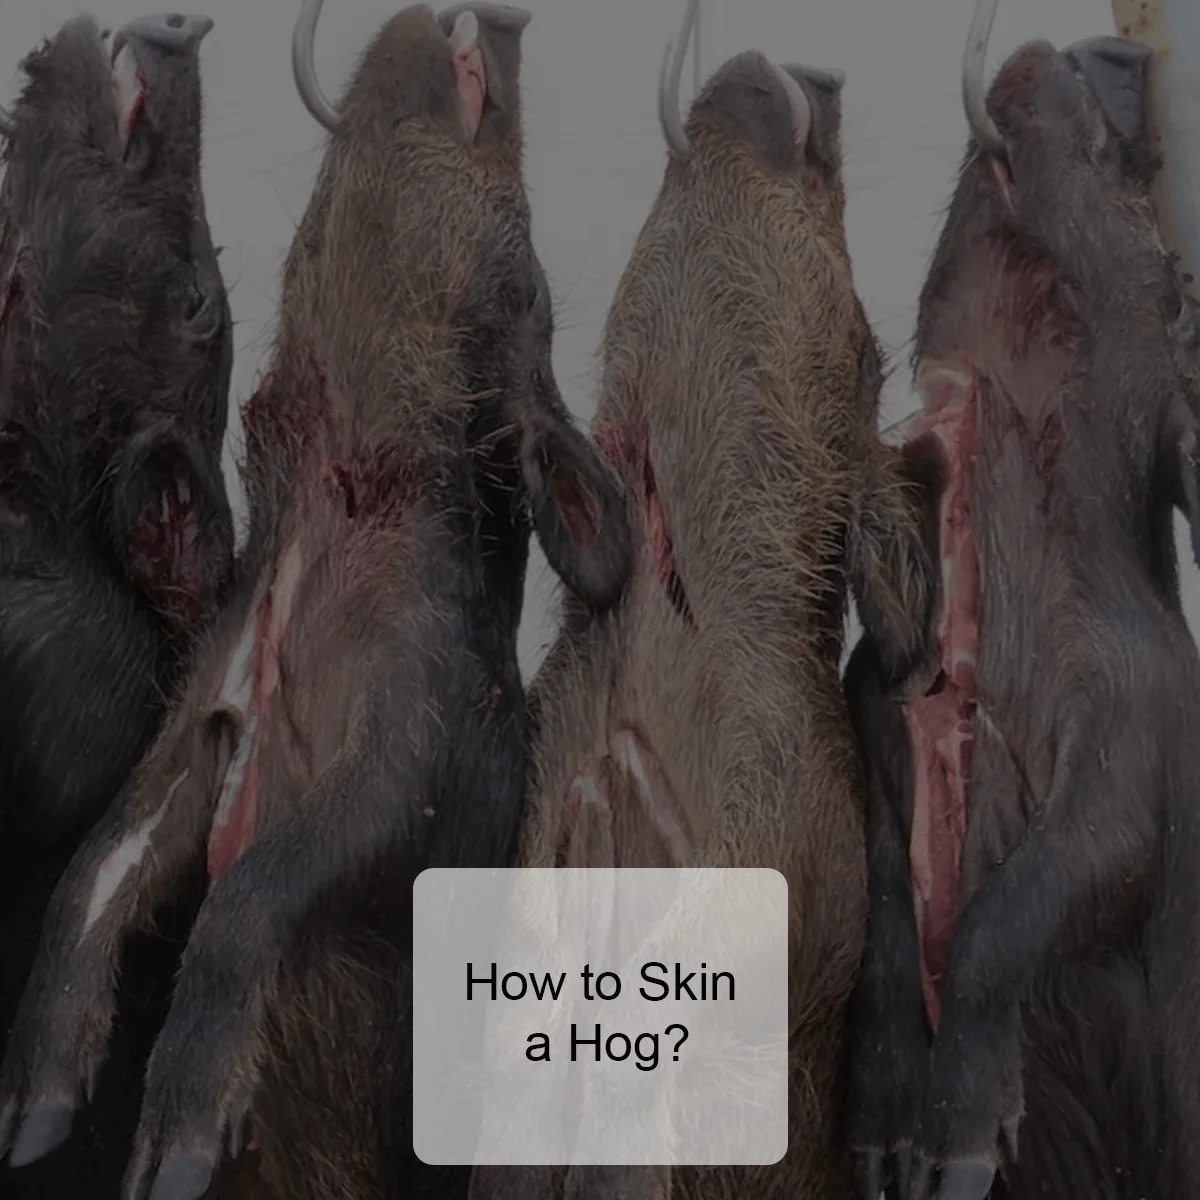 How to skin a hog?